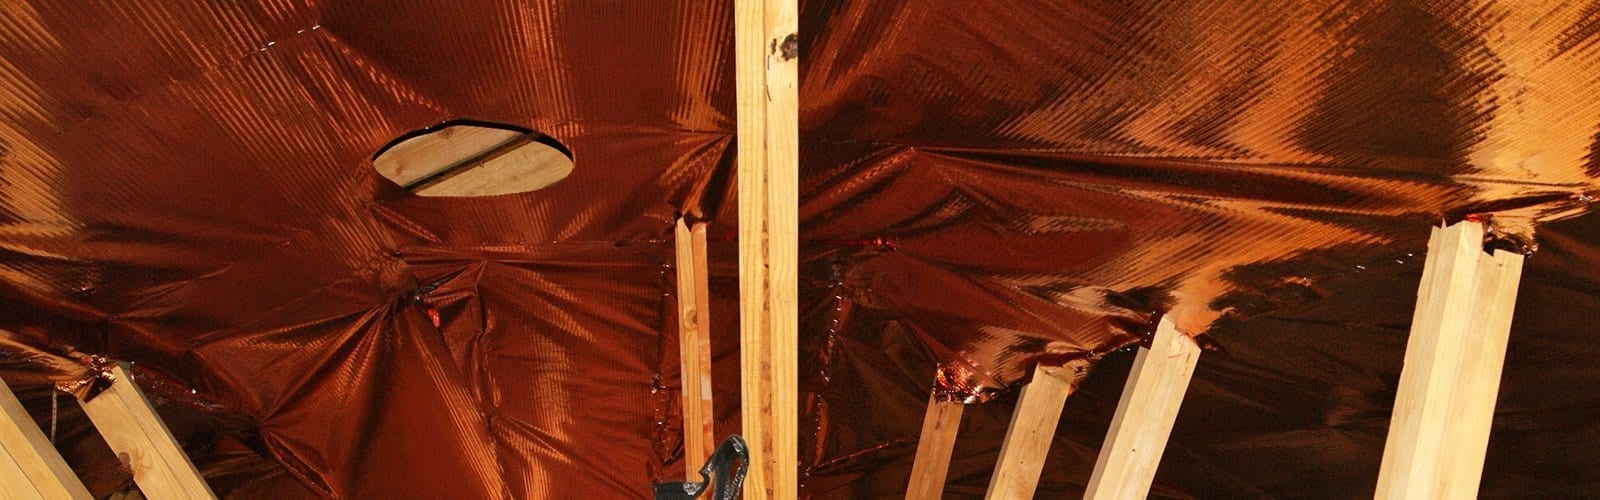 copper-radiant-barrier-slide-3